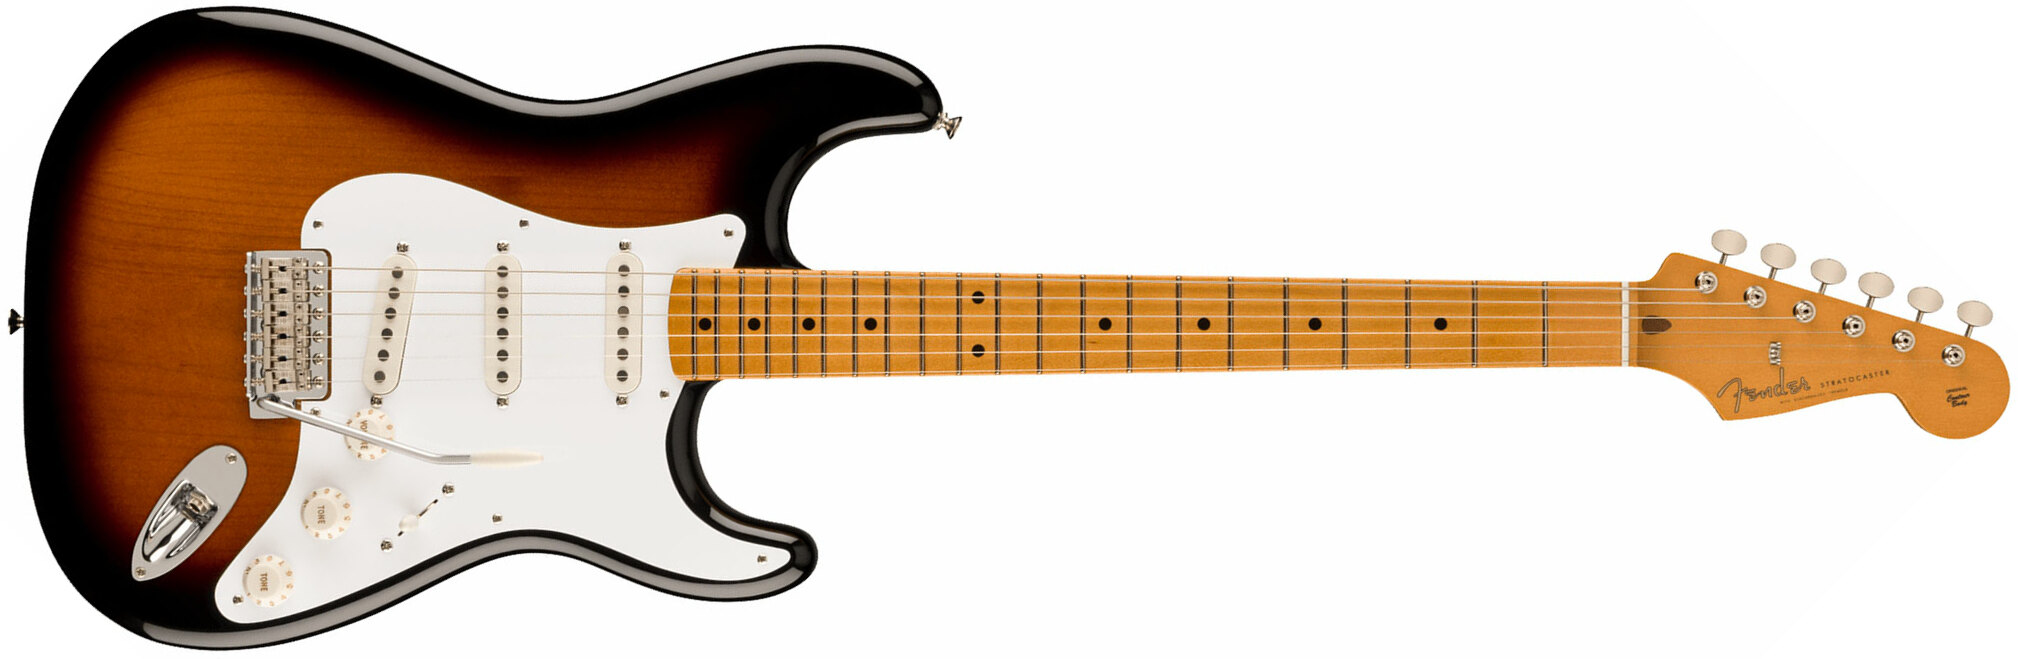 Fender Strat 50s Vintera 2 Mex 3s Trem Mn - 2-color Sunburst - Guitare Électrique Forme Str - Main picture